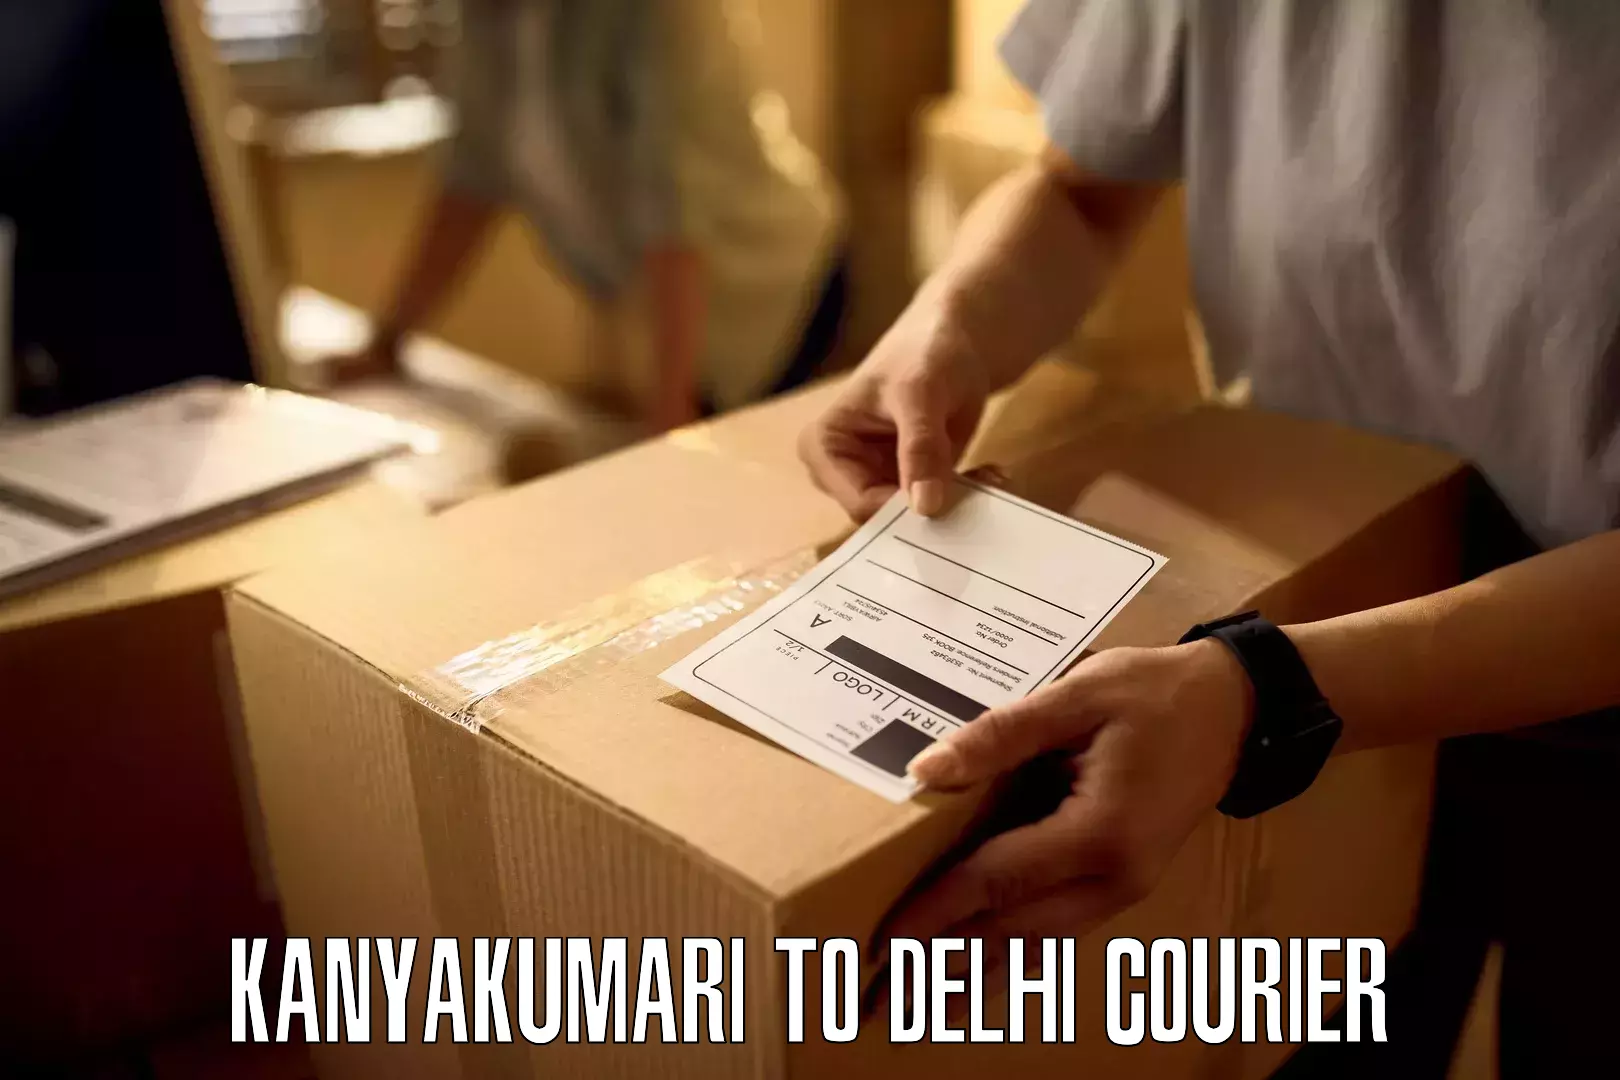 Small business couriers Kanyakumari to Delhi